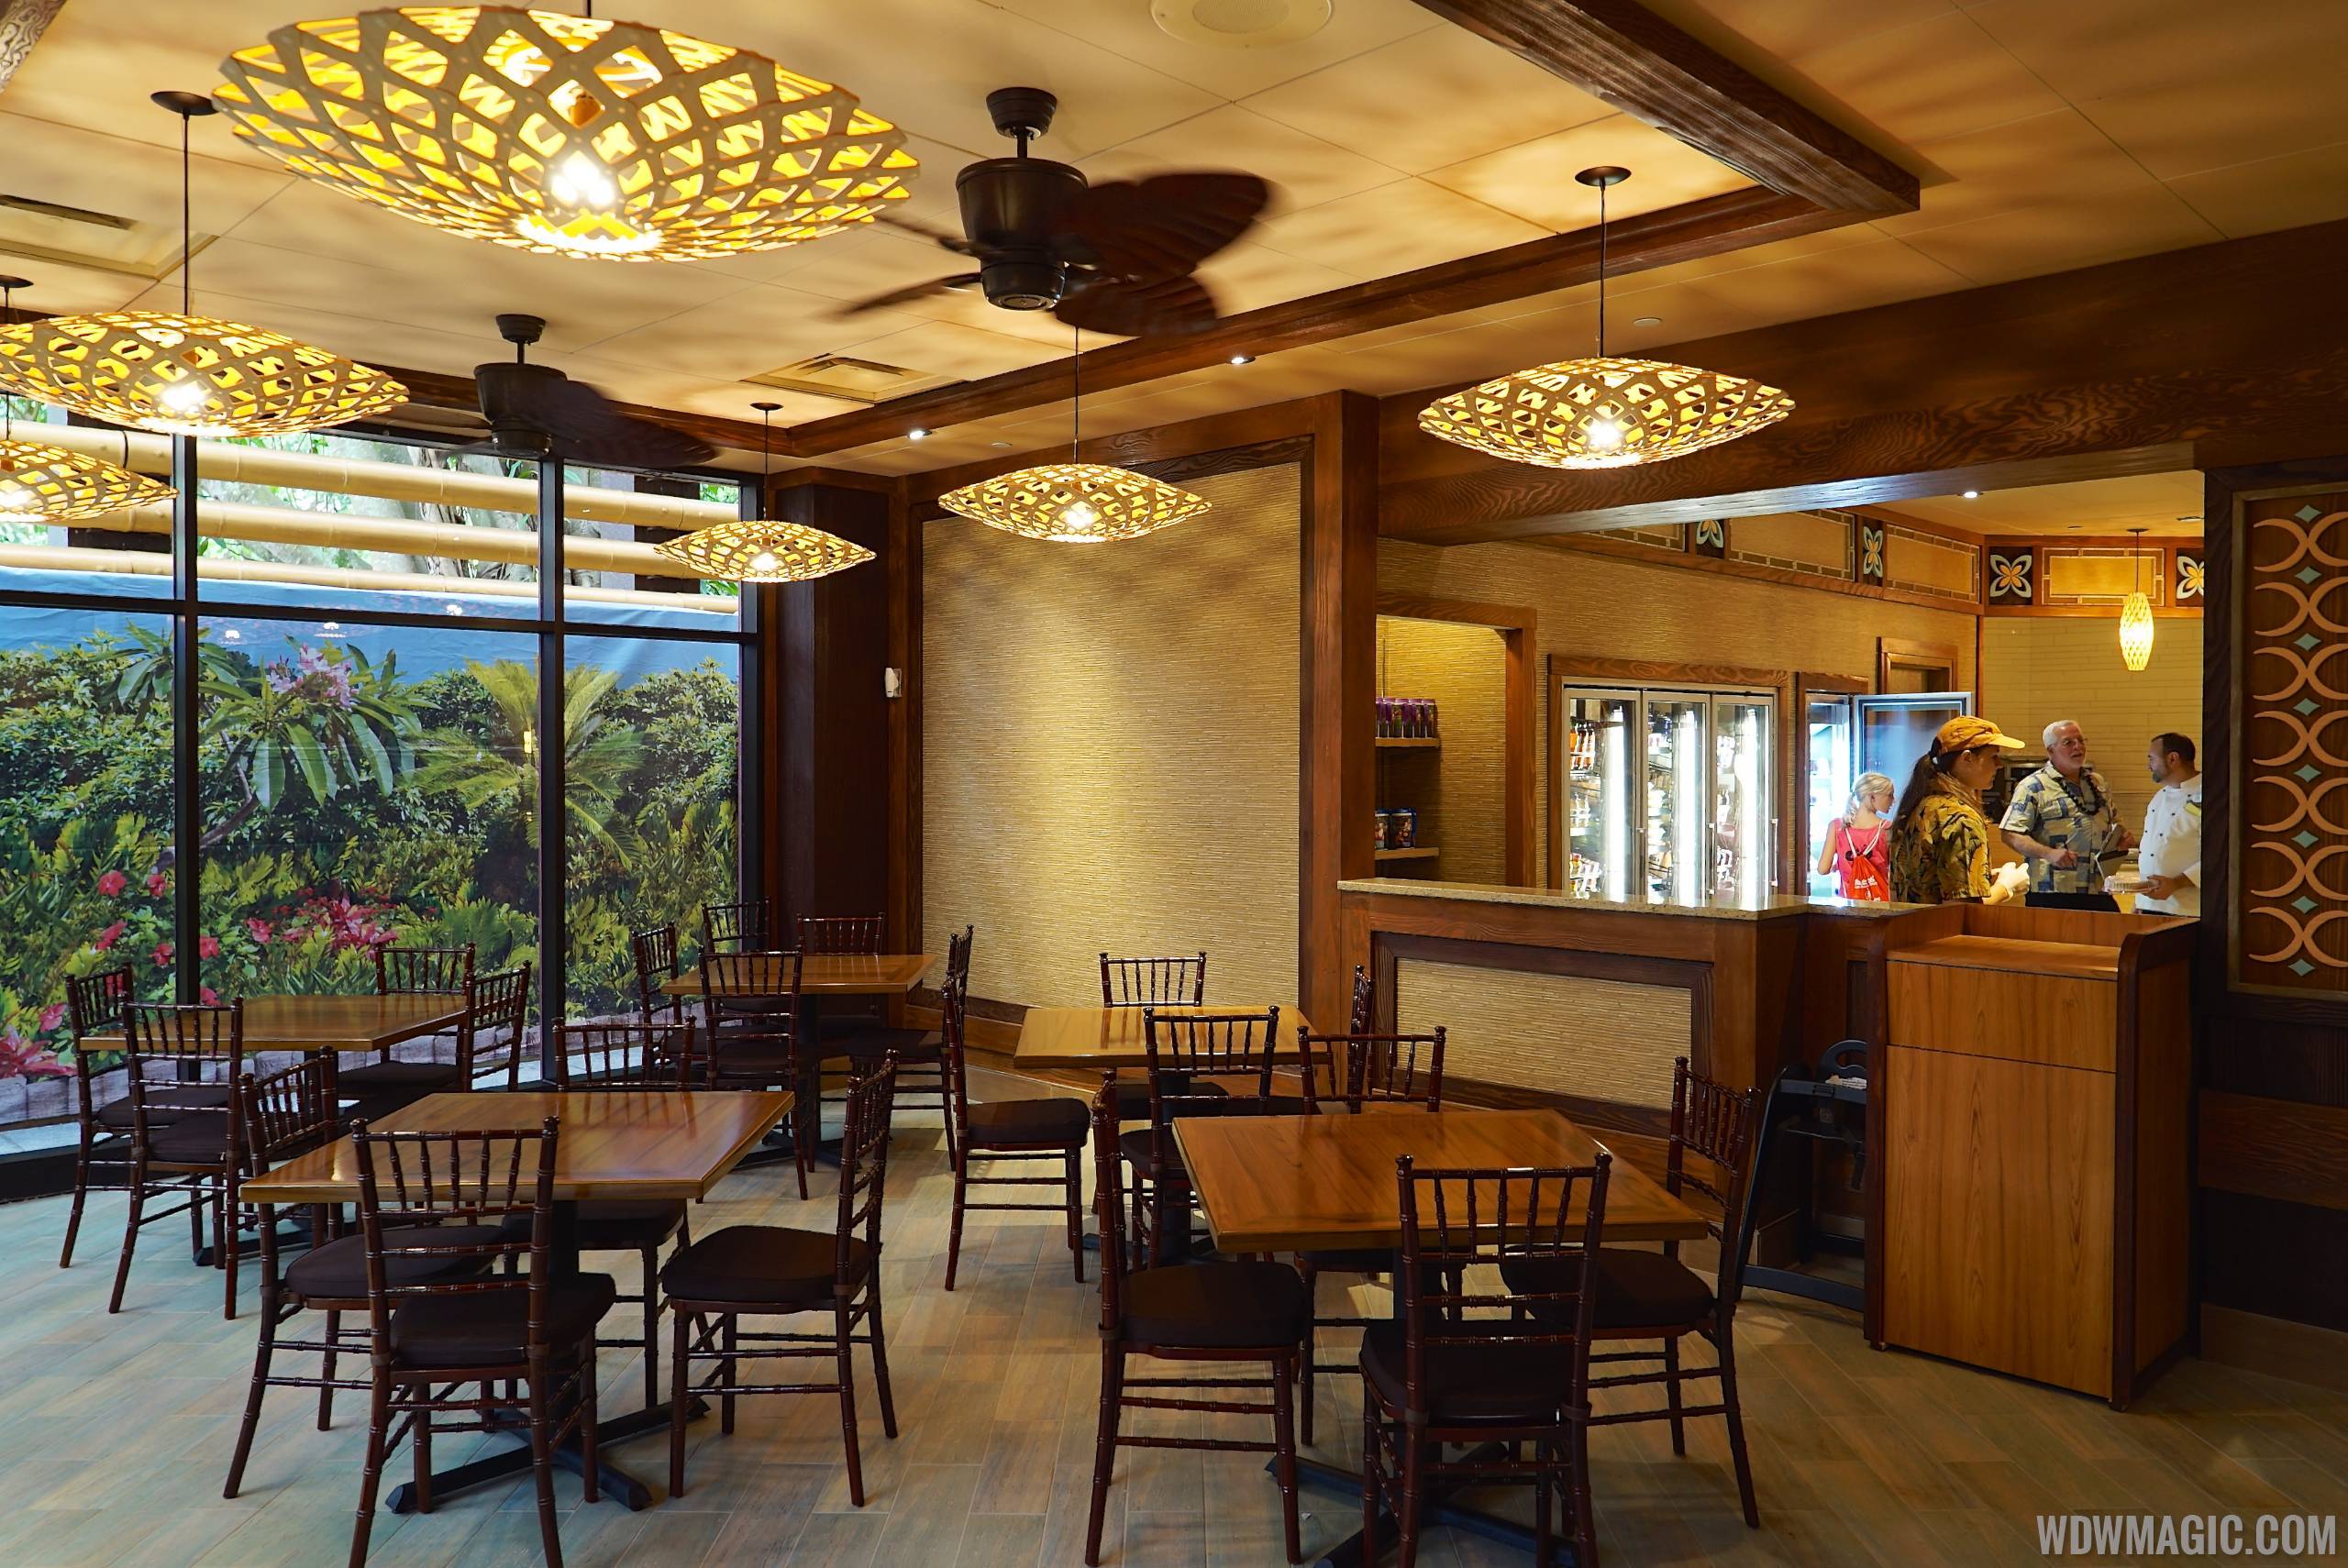 Captain Cook's at Disney's Polynesian Resort refurbishment closure pushed back 